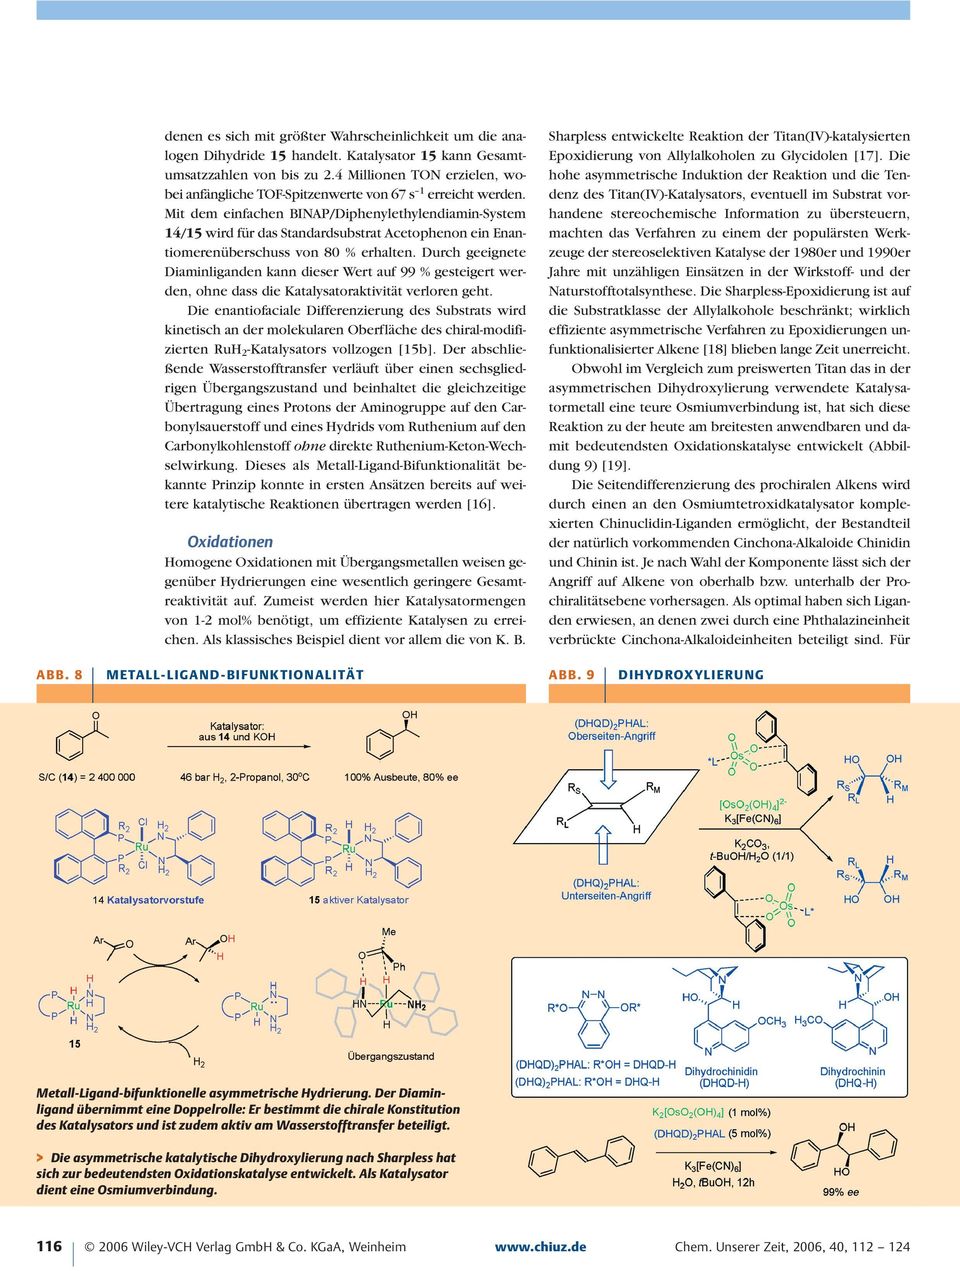 Mit dem einfachen BINAP/Diphenylethylendiamin-System 14/15 wird für das Standardsubstrat Acetophenon ein Enantiomerenüberschuss von 80 % erhalten.